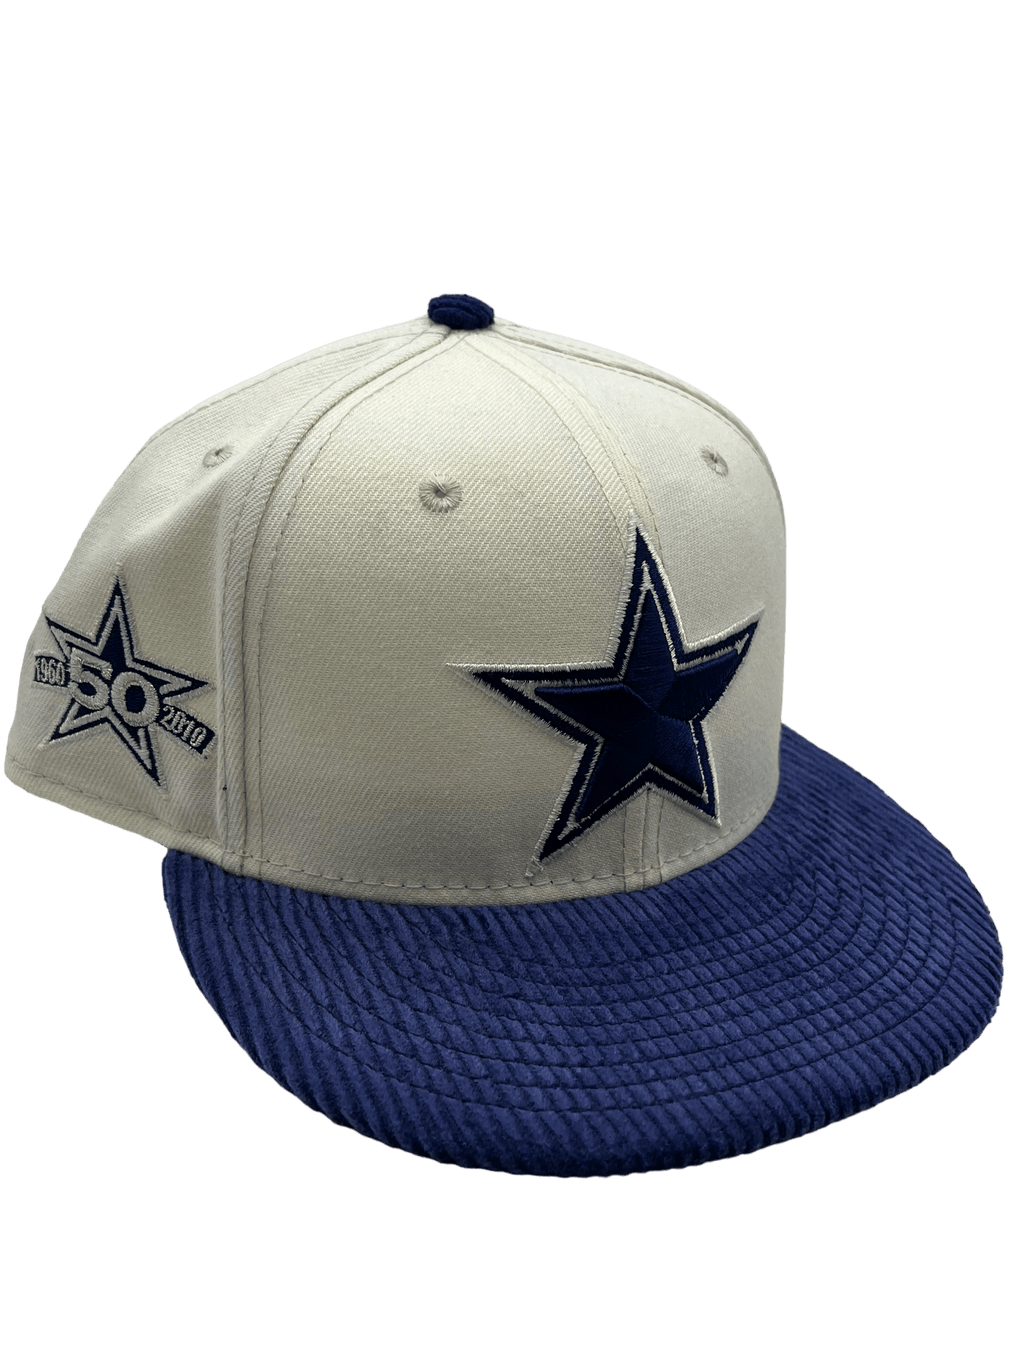 dallas cowboys hat